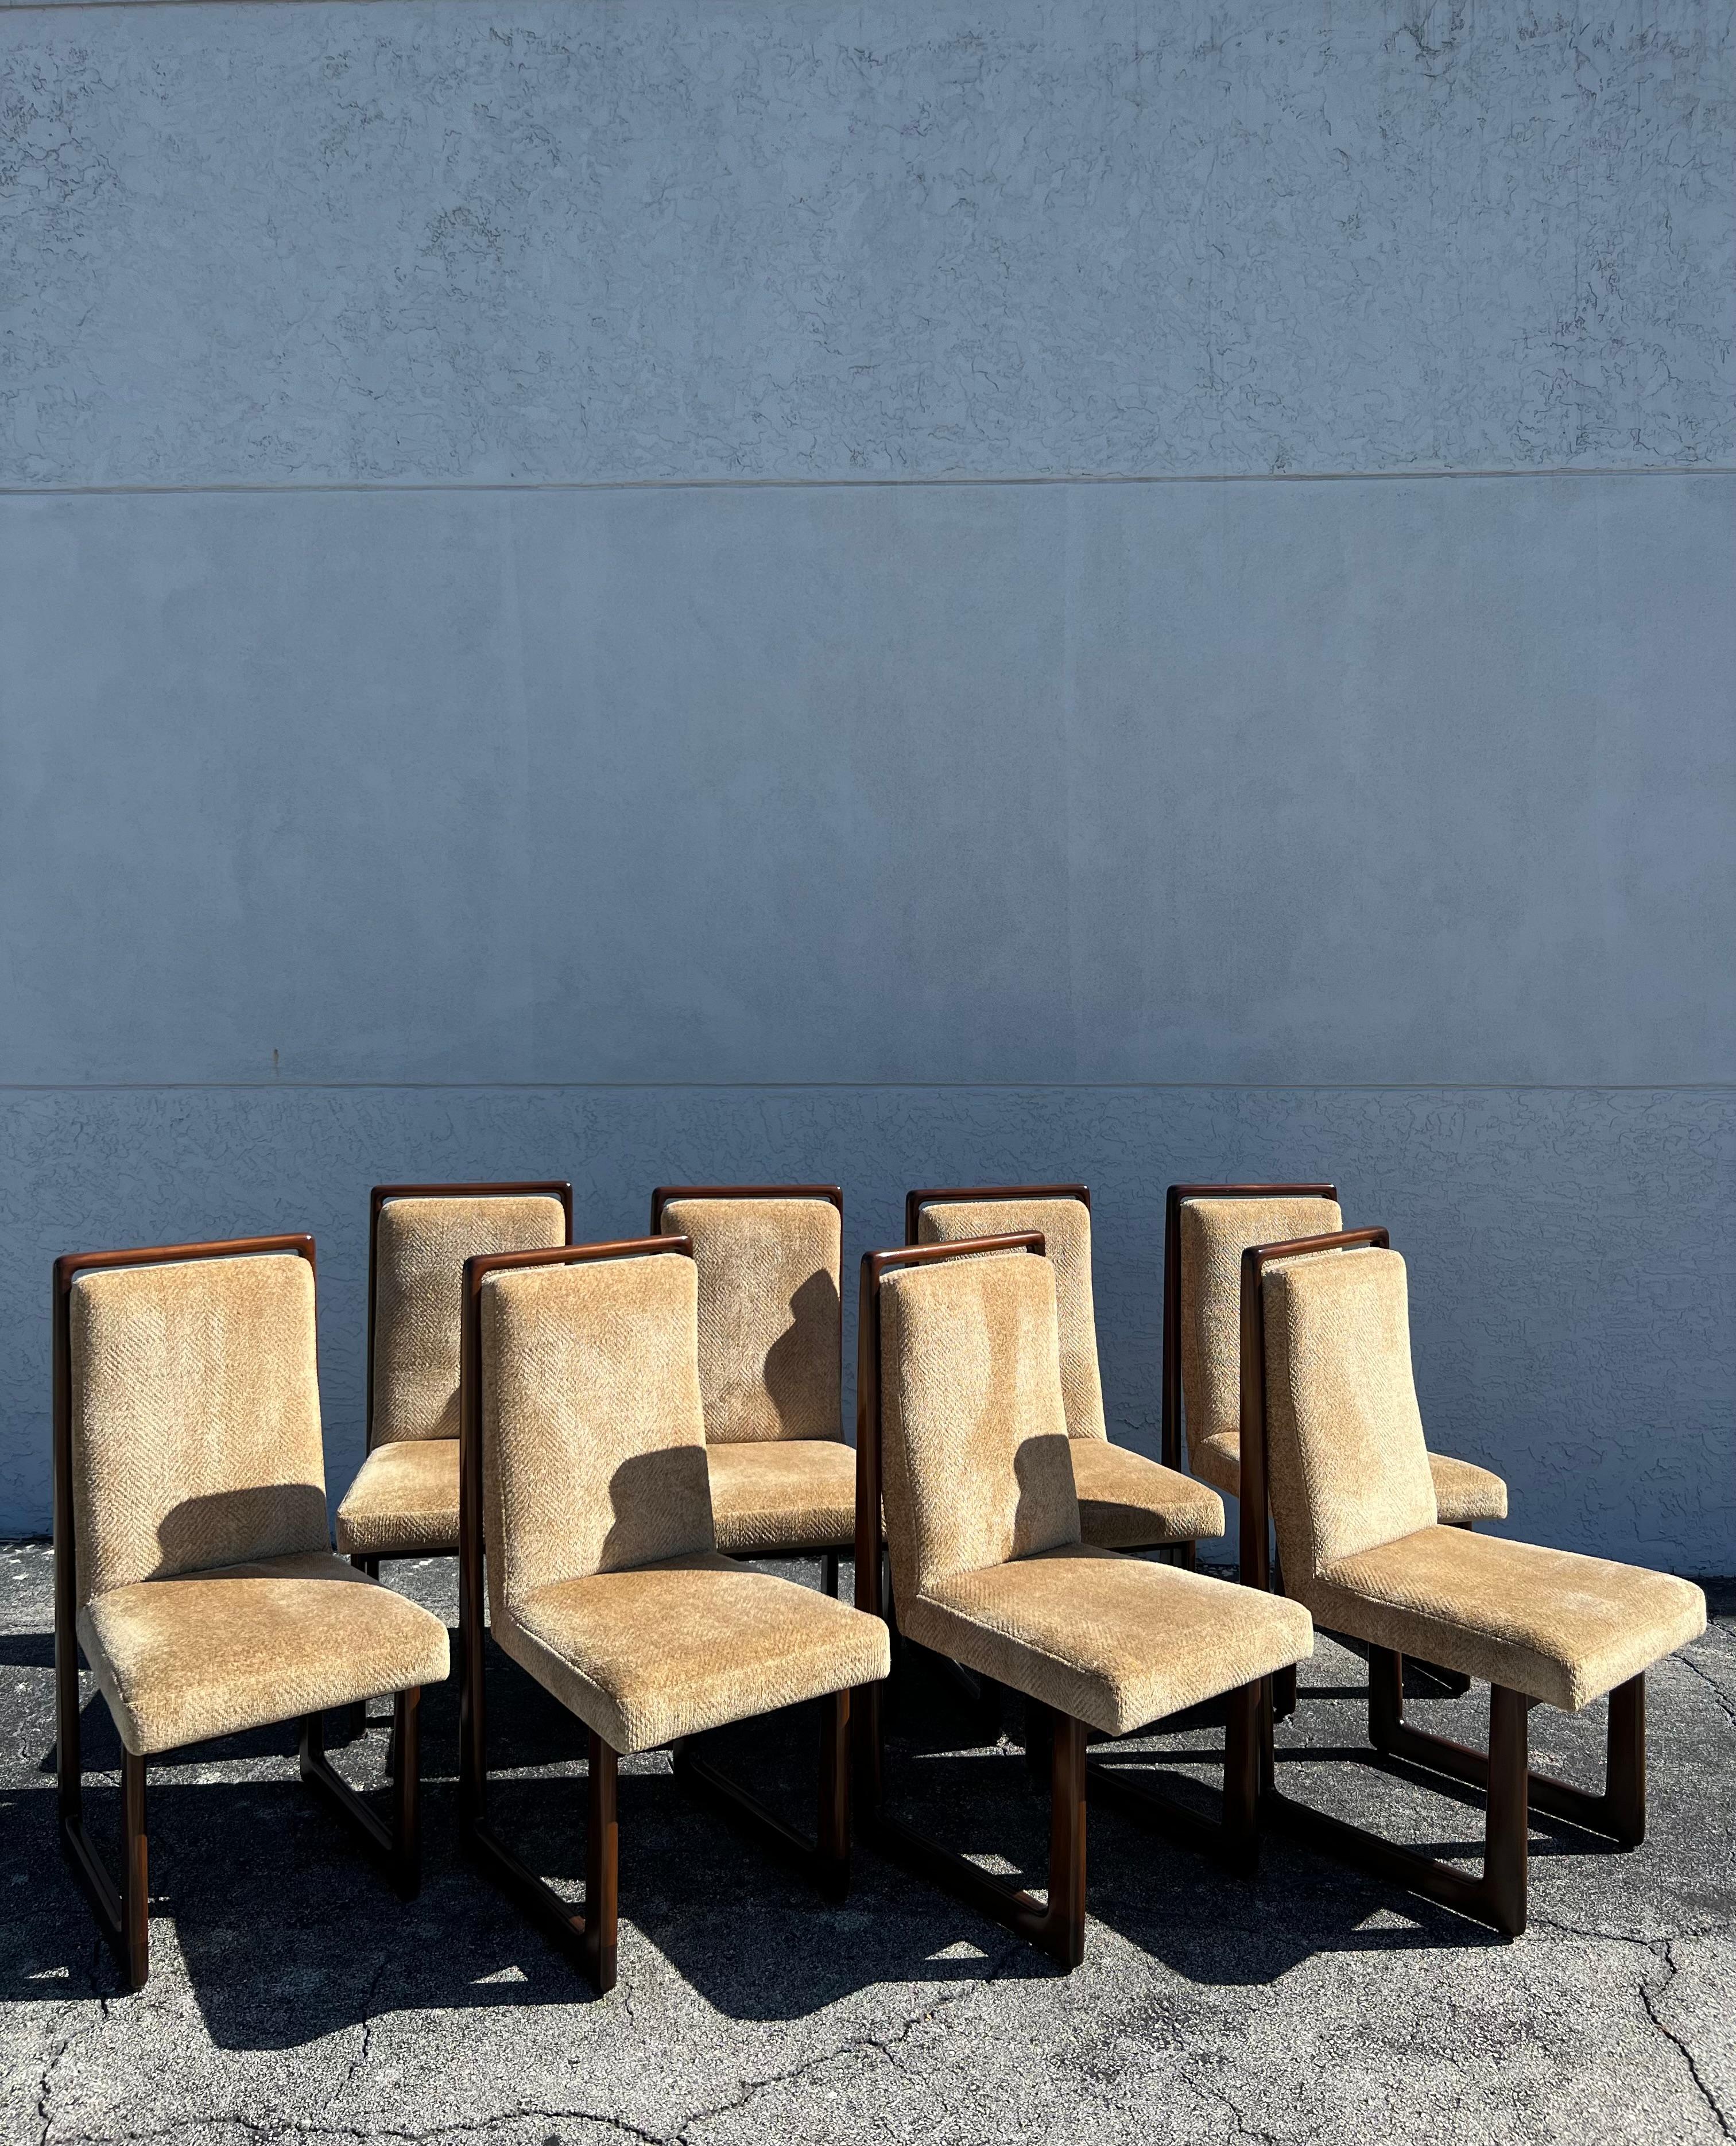 Satz von 8 kubistischen Esszimmerstühlen von Vladimir Kagan. Die Stühle wurden vor Jahren aufgefrischt und mit einer schweren goldfarbenen Chenille neu bezogen. Leider wurden die Originaletiketten überlackiert, sie sind jedoch noch intakt. Wir haben